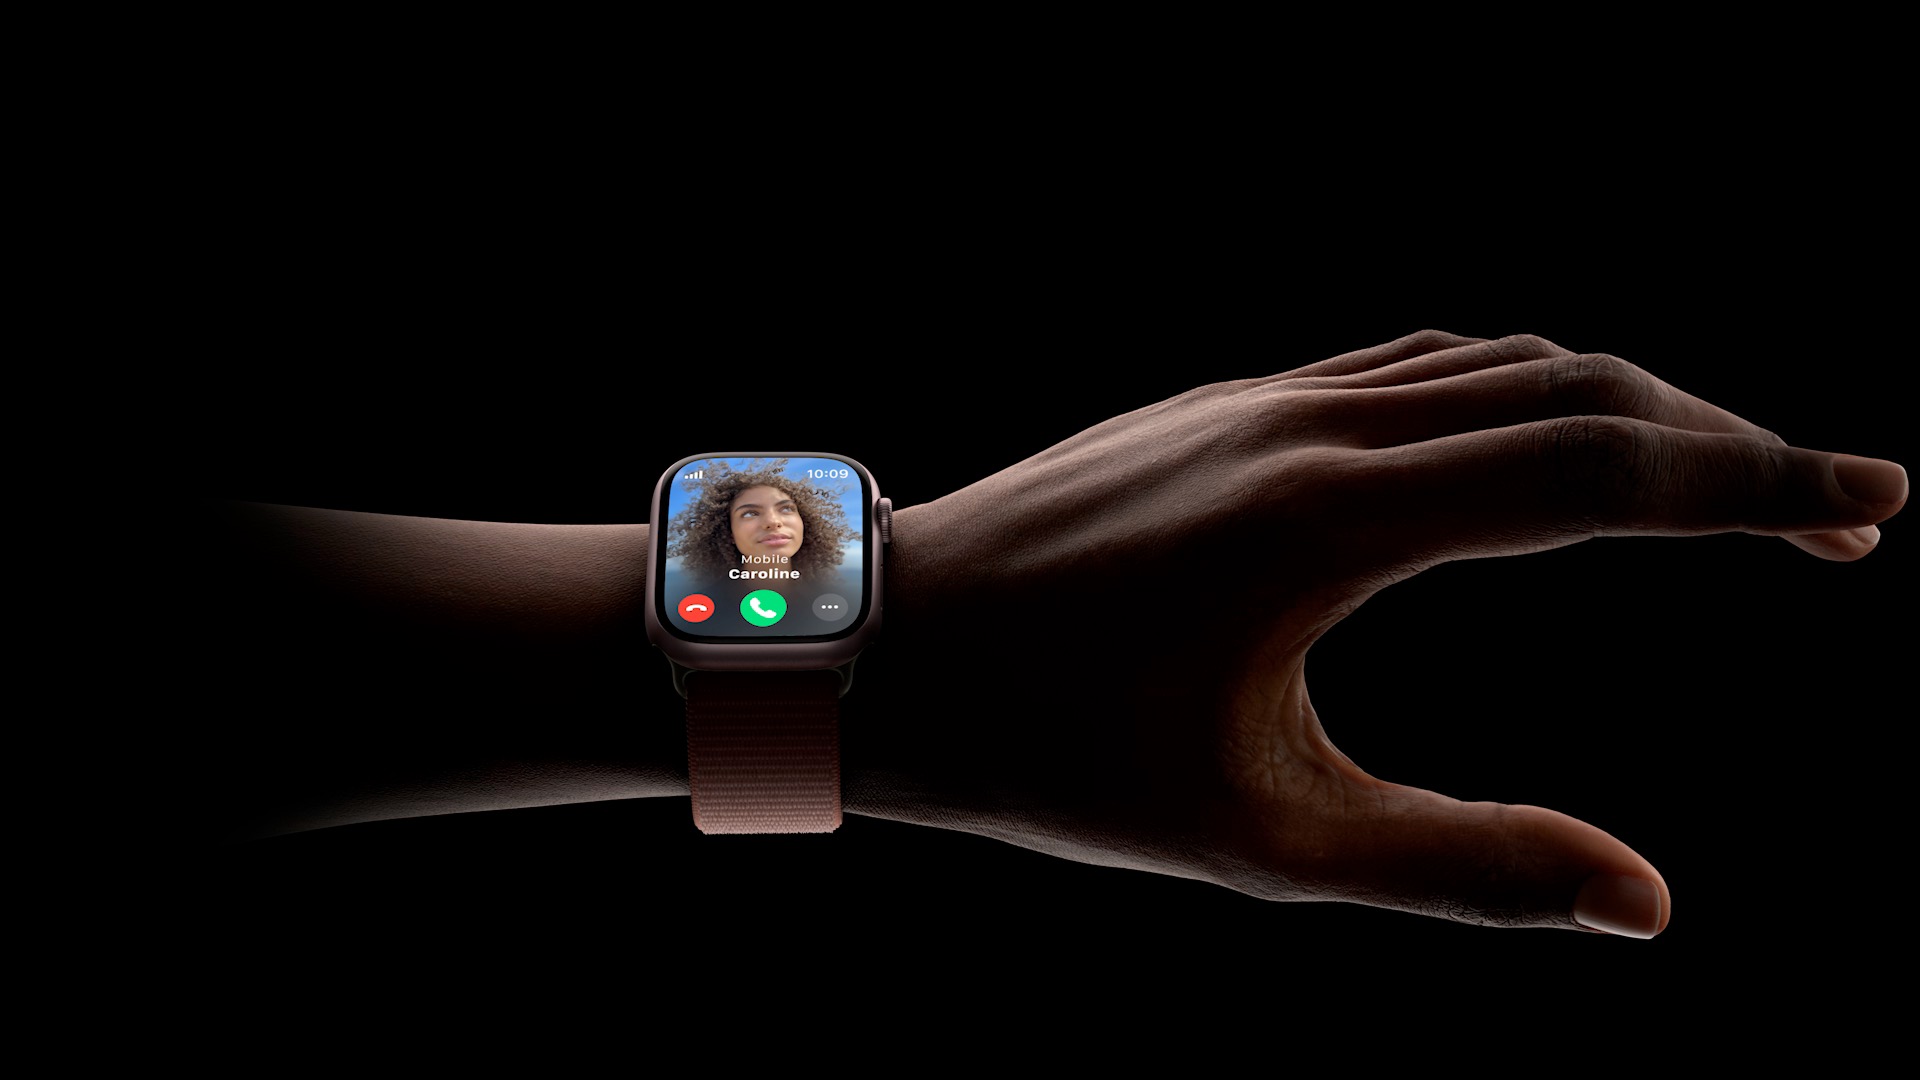 Apple-Watch-double-tap-gesture.jpg.large_2x.jpg